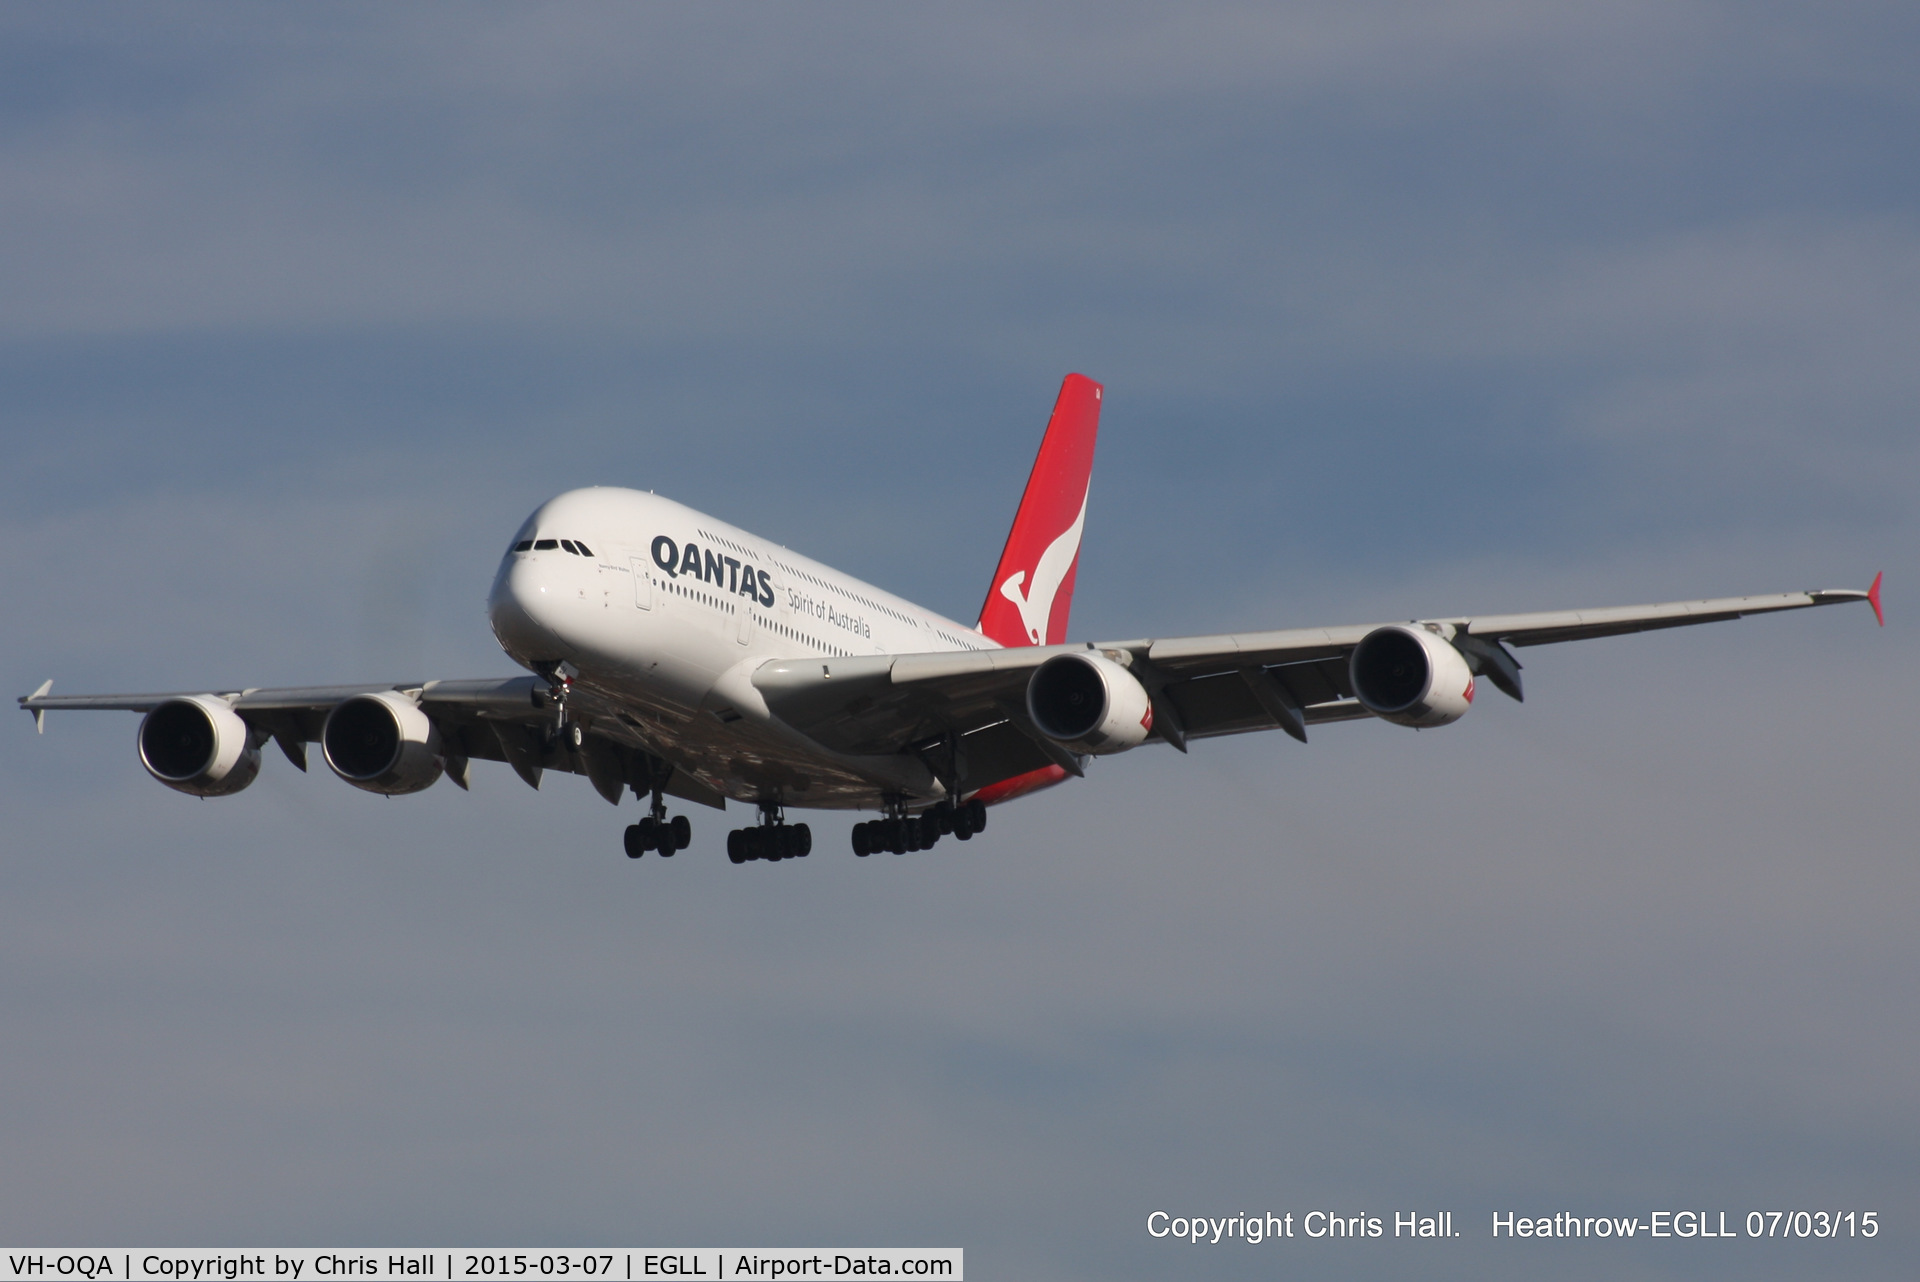 VH-OQA, 2008 Airbus A380-842 C/N 014, Qantas